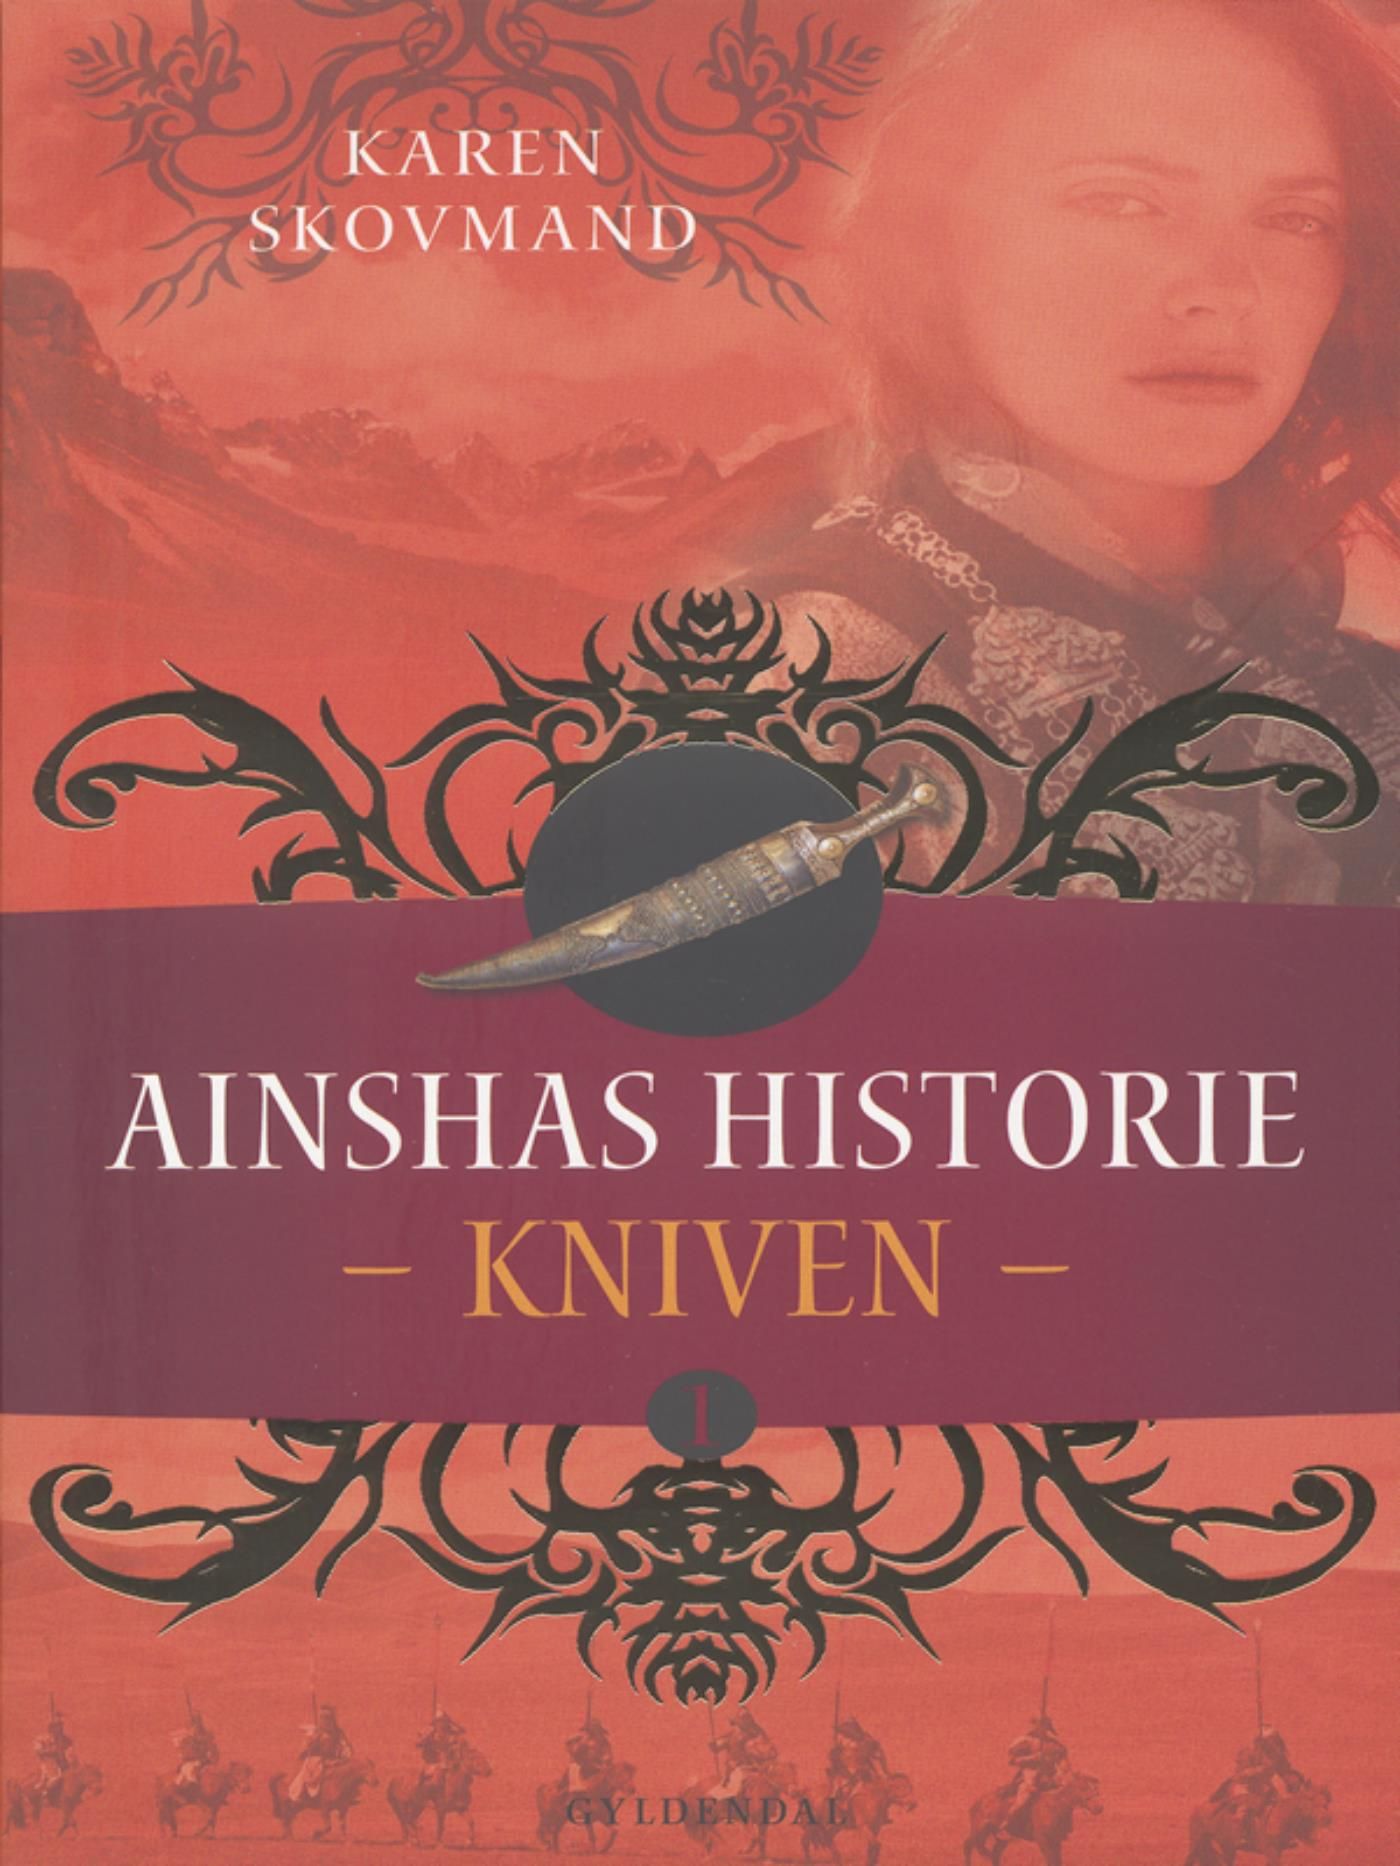 Ainshas historie 1 - Kniven, e-bok av Karen Skovmand Jensen